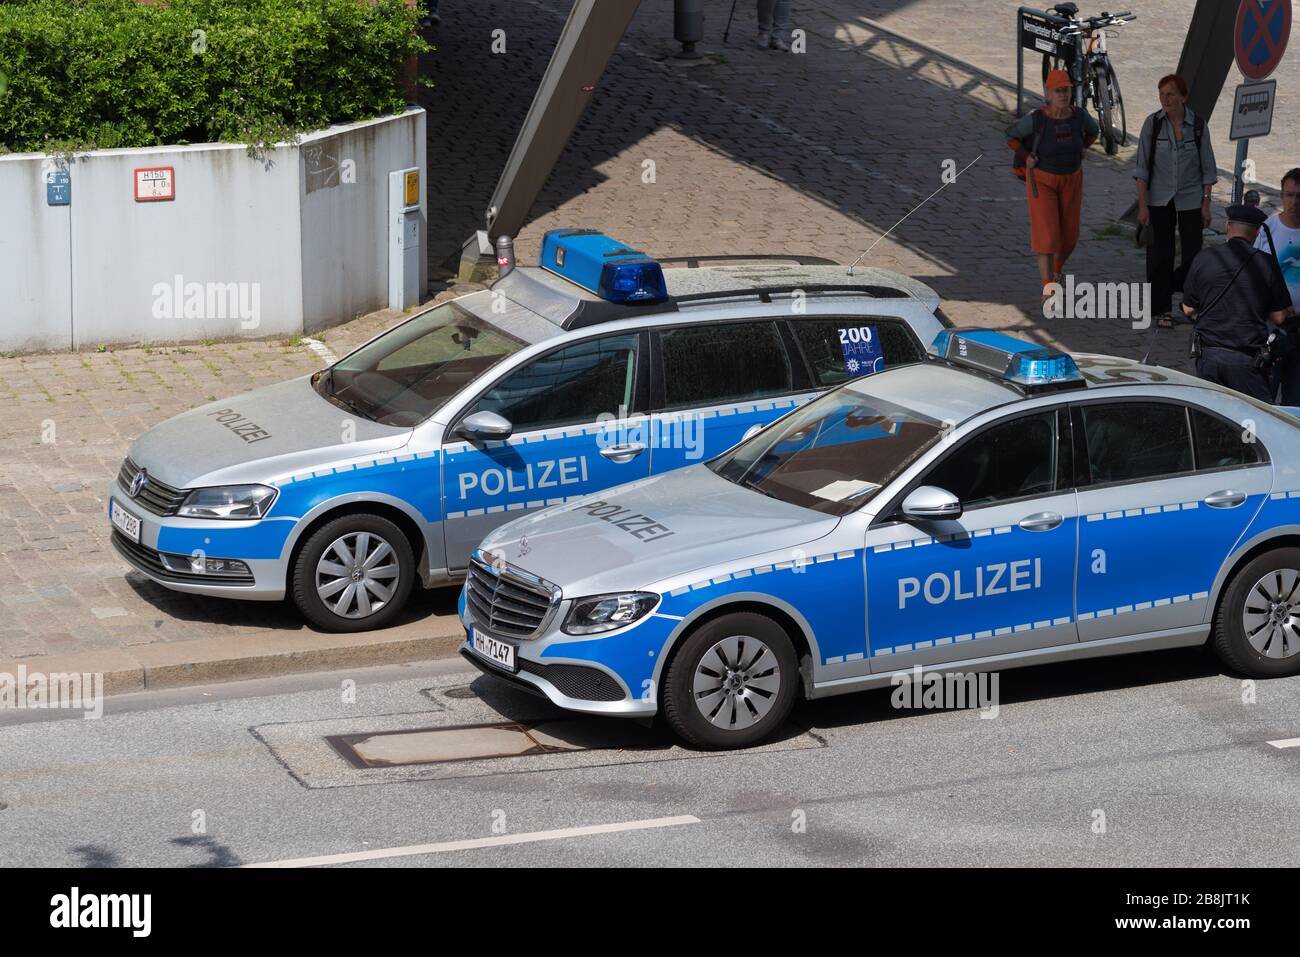 HAMBURG, DEUTSCHLAND - 12. MAI 2018: Die Polizei Hamburg hat 9.748 Mitarbeiter, davon 6.174 uniformierte Polizisten, 1.521 Kriminalpolizisten, 498 Offi Stockfoto